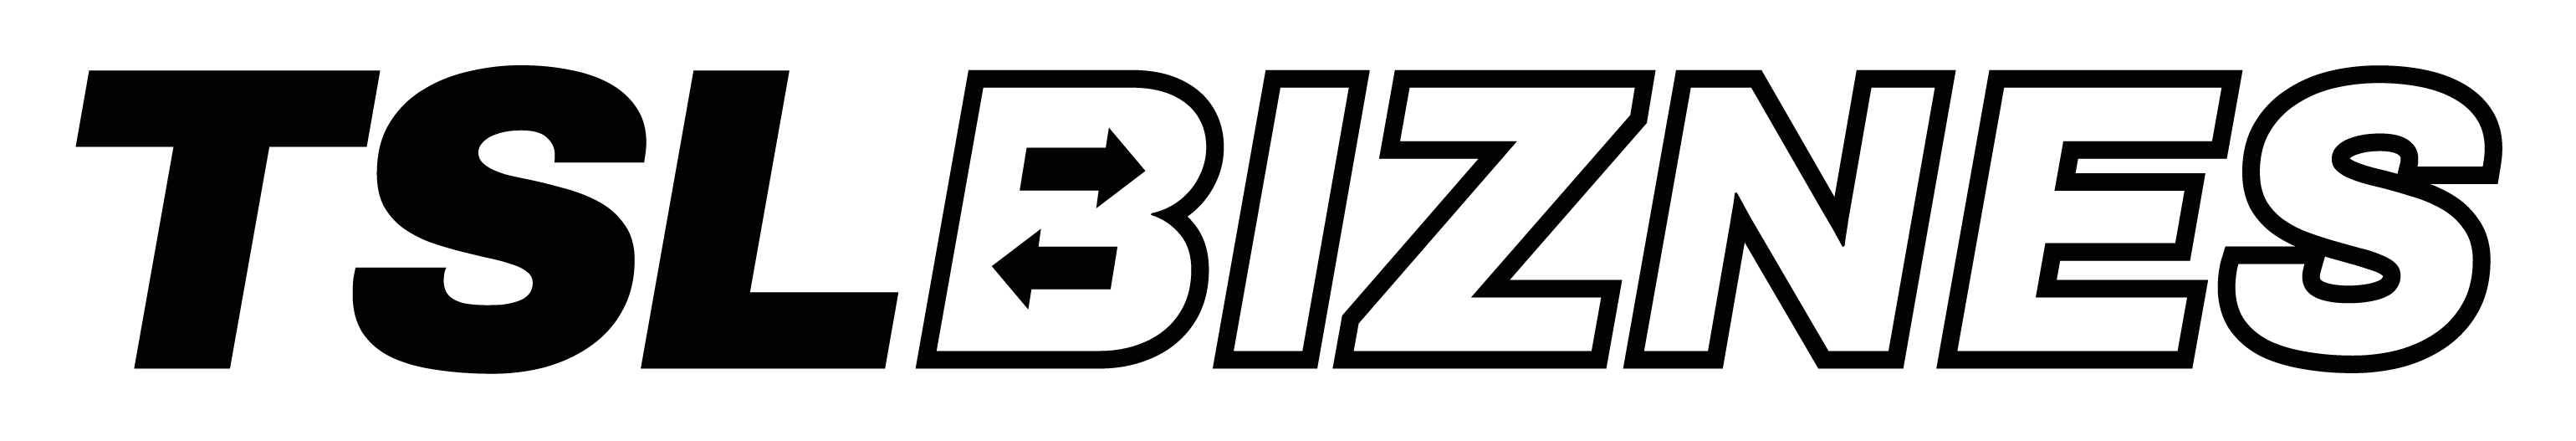 TSL_BIZNES_logo_poziome_czarne_rgb.jpg